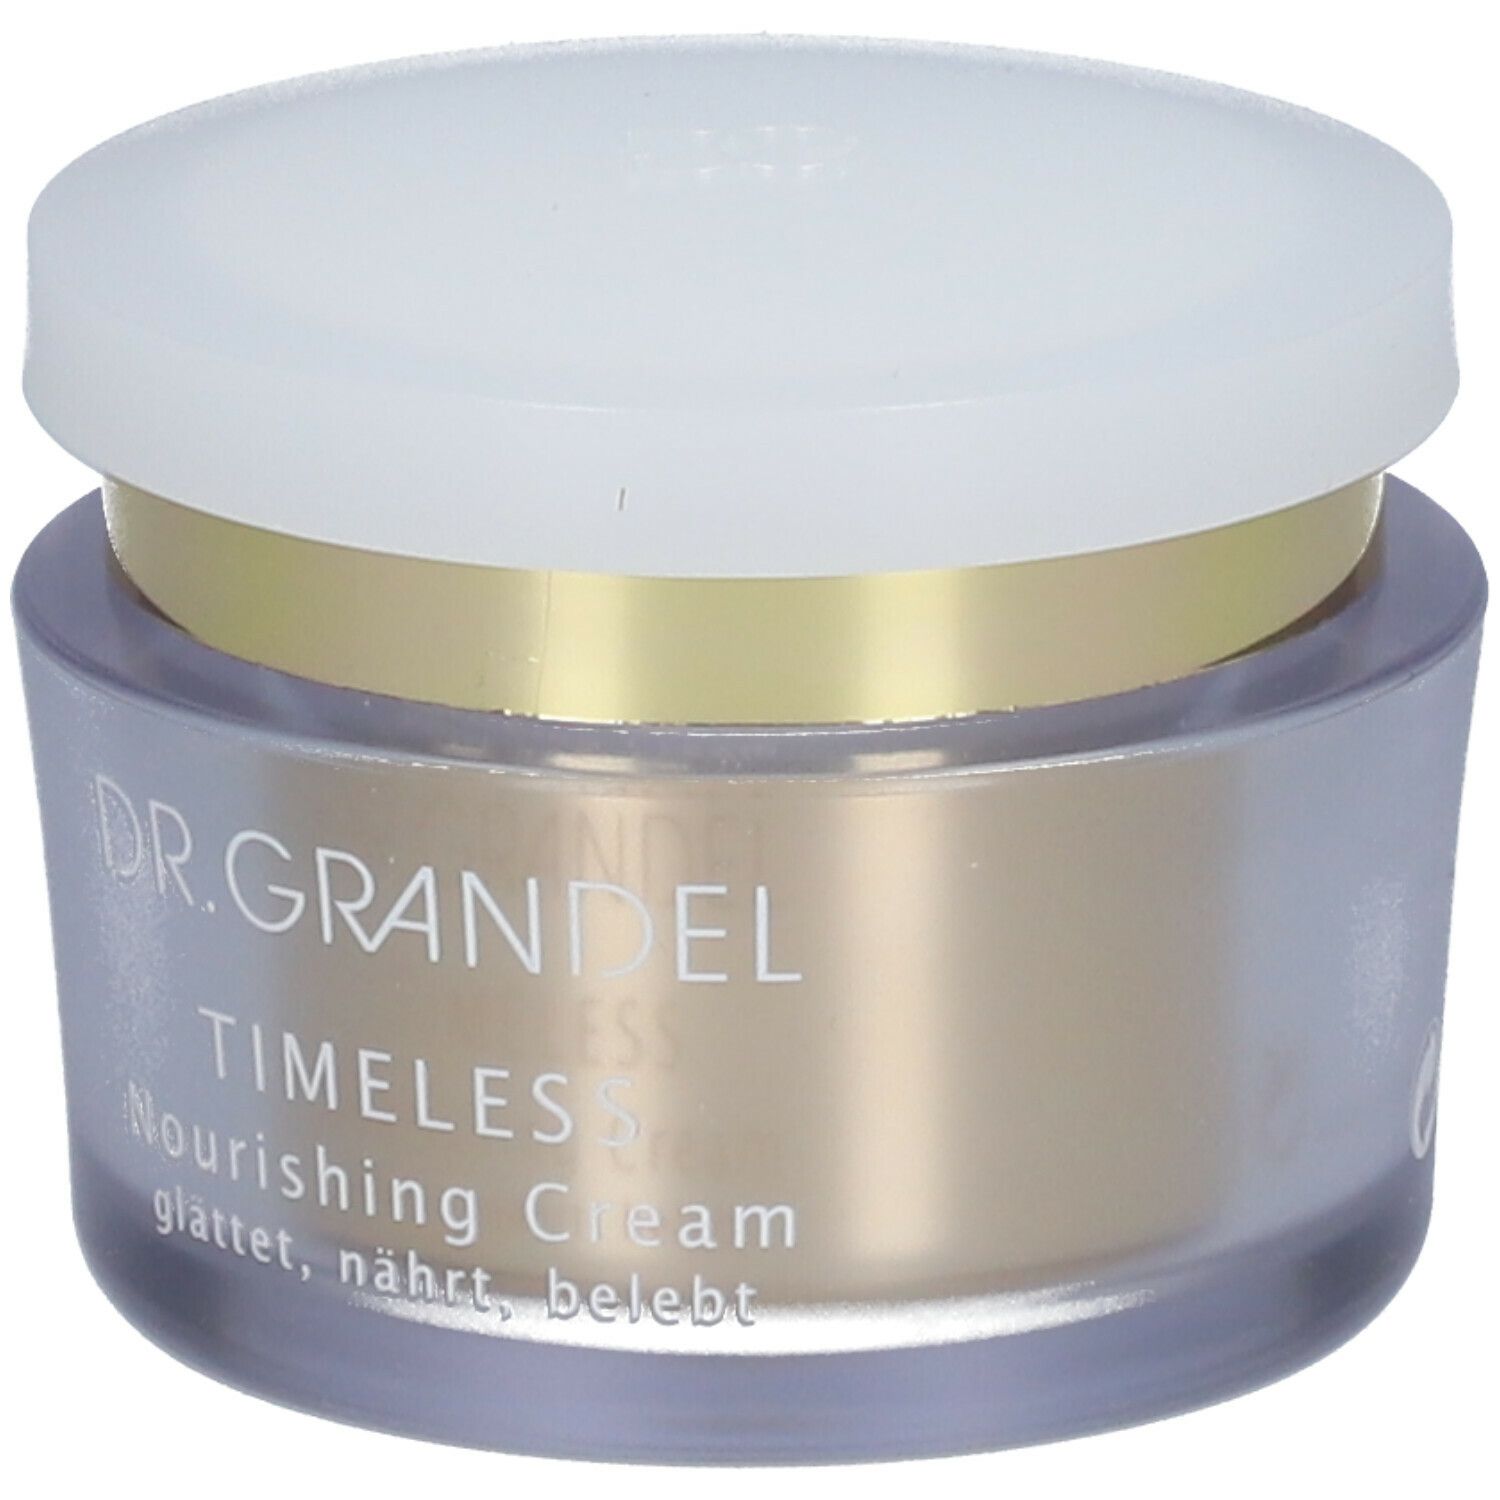 Dr. Grandel Timeless Nourishing Cream